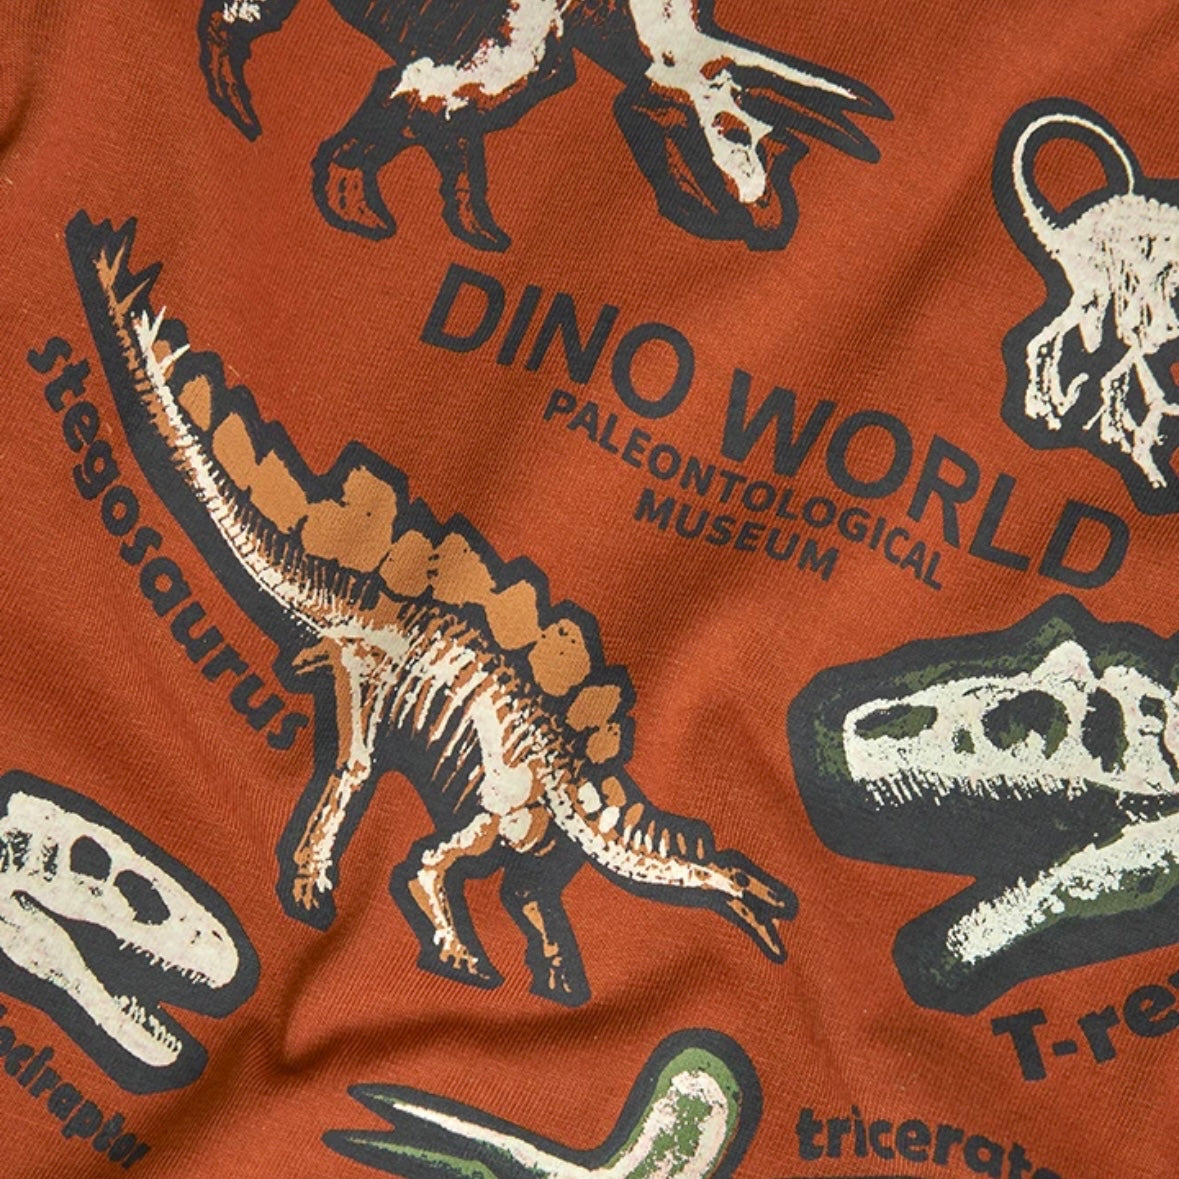 Conjunto Dino World camiseta y pantalón